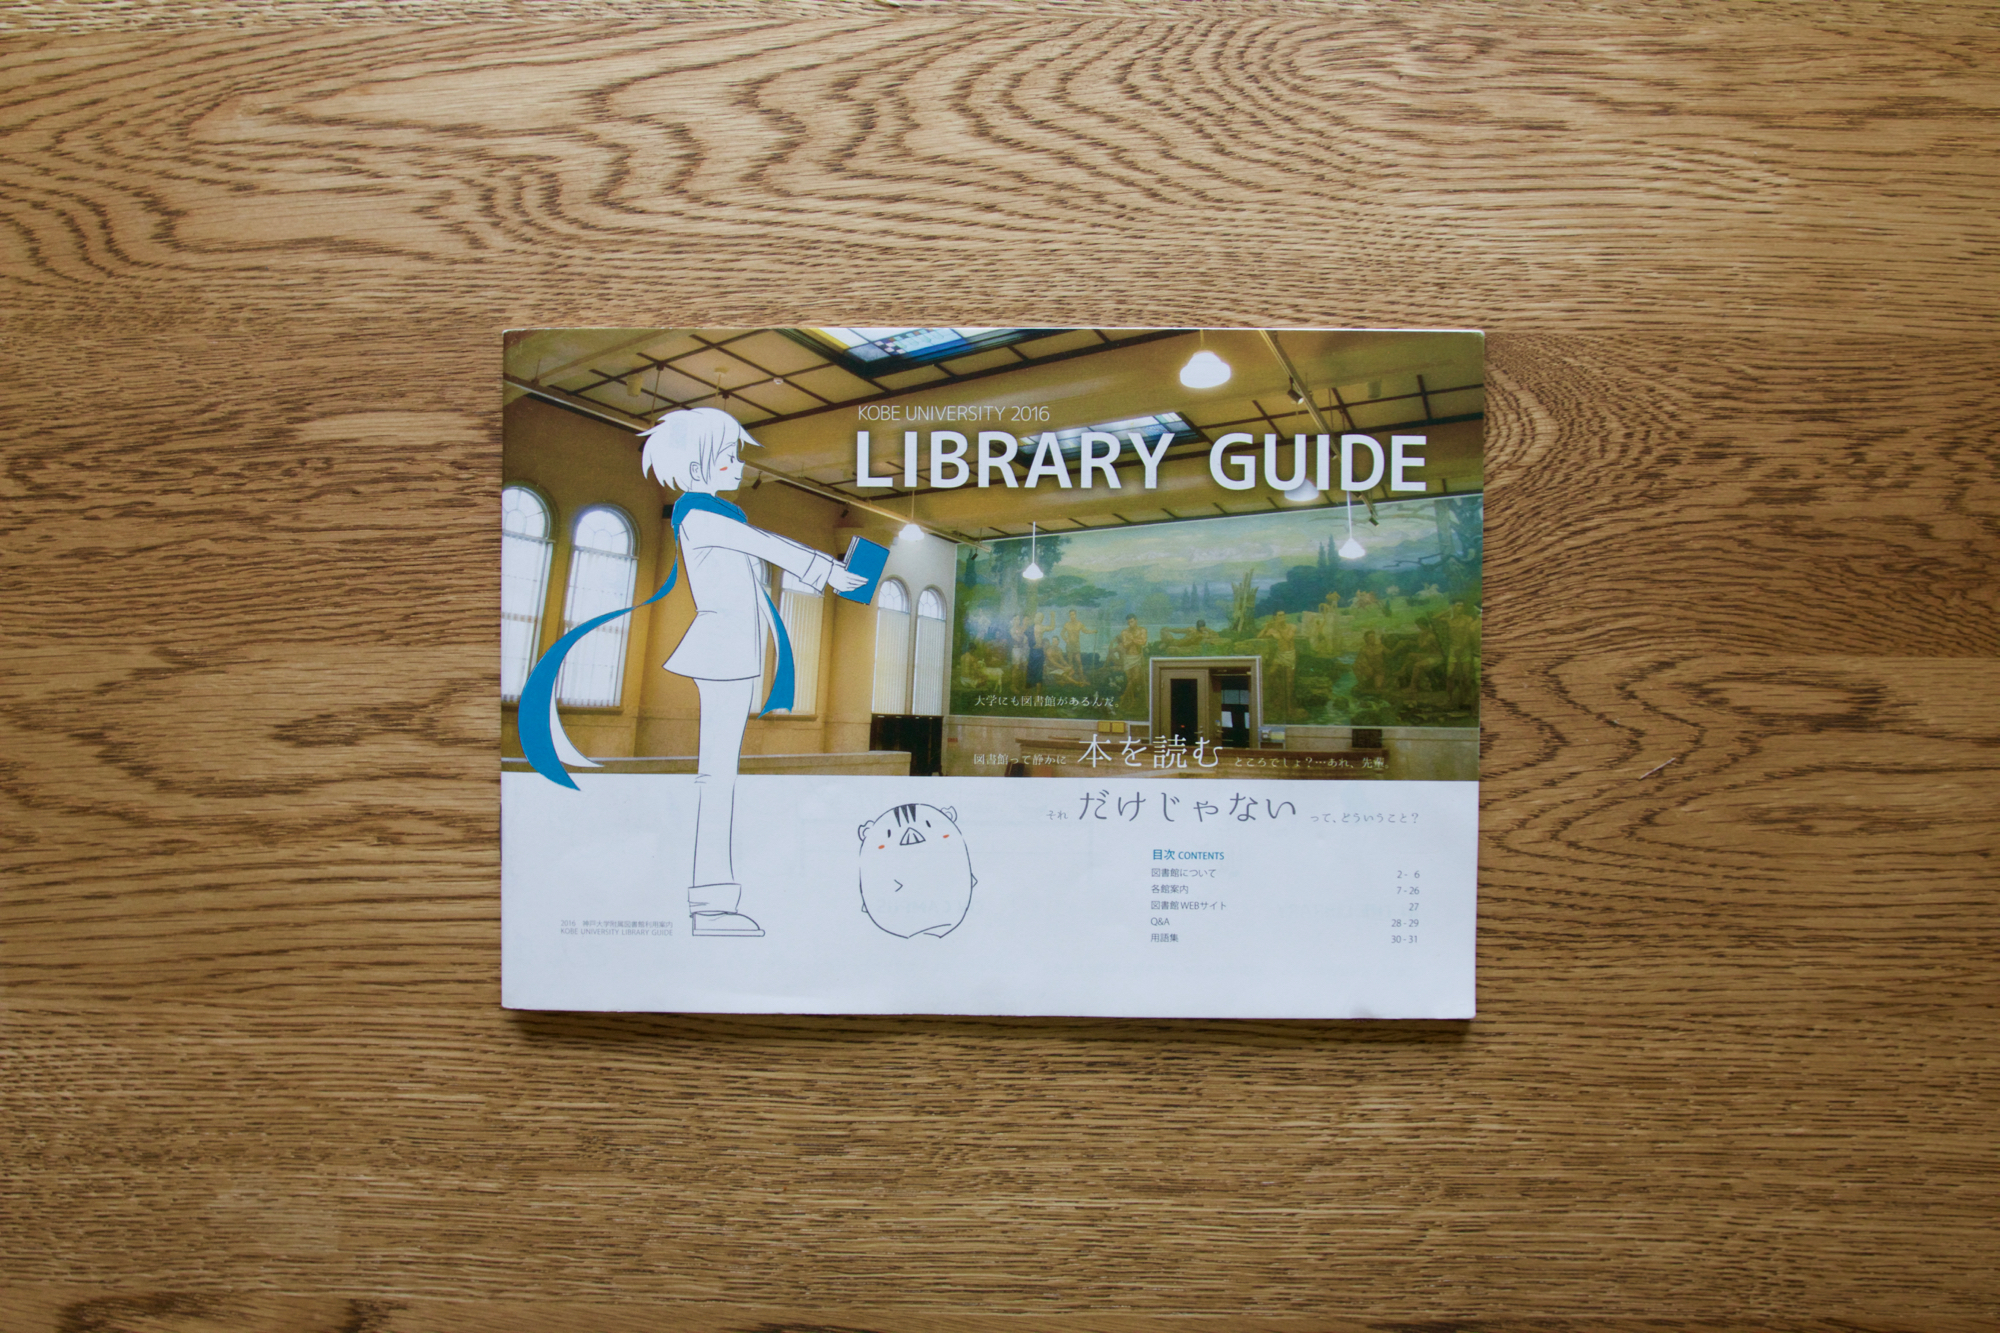 各図書館で配布されている「LIBRARY GUIDE」